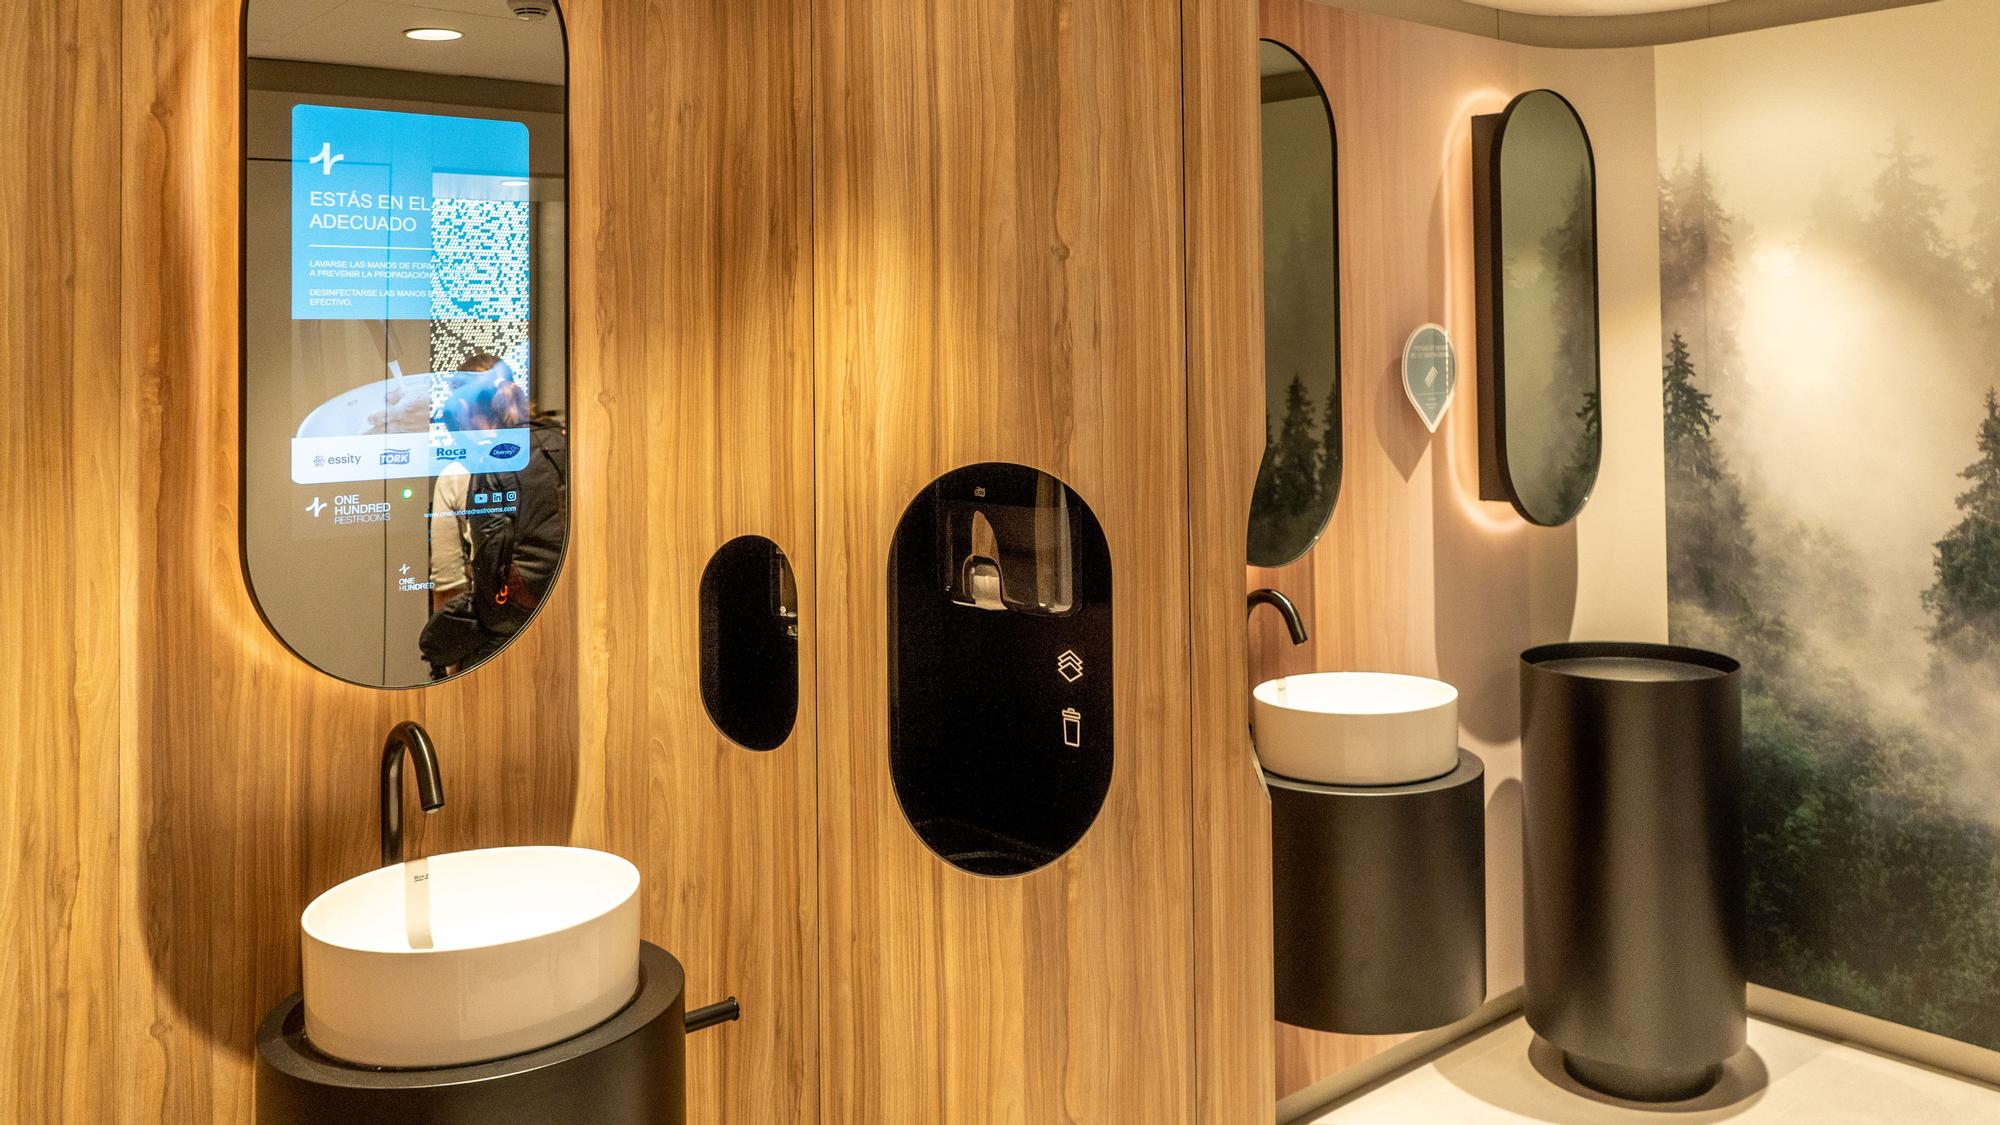 Televisión en la ducha, o espejos interactivos: Así serán los baños del  futuro